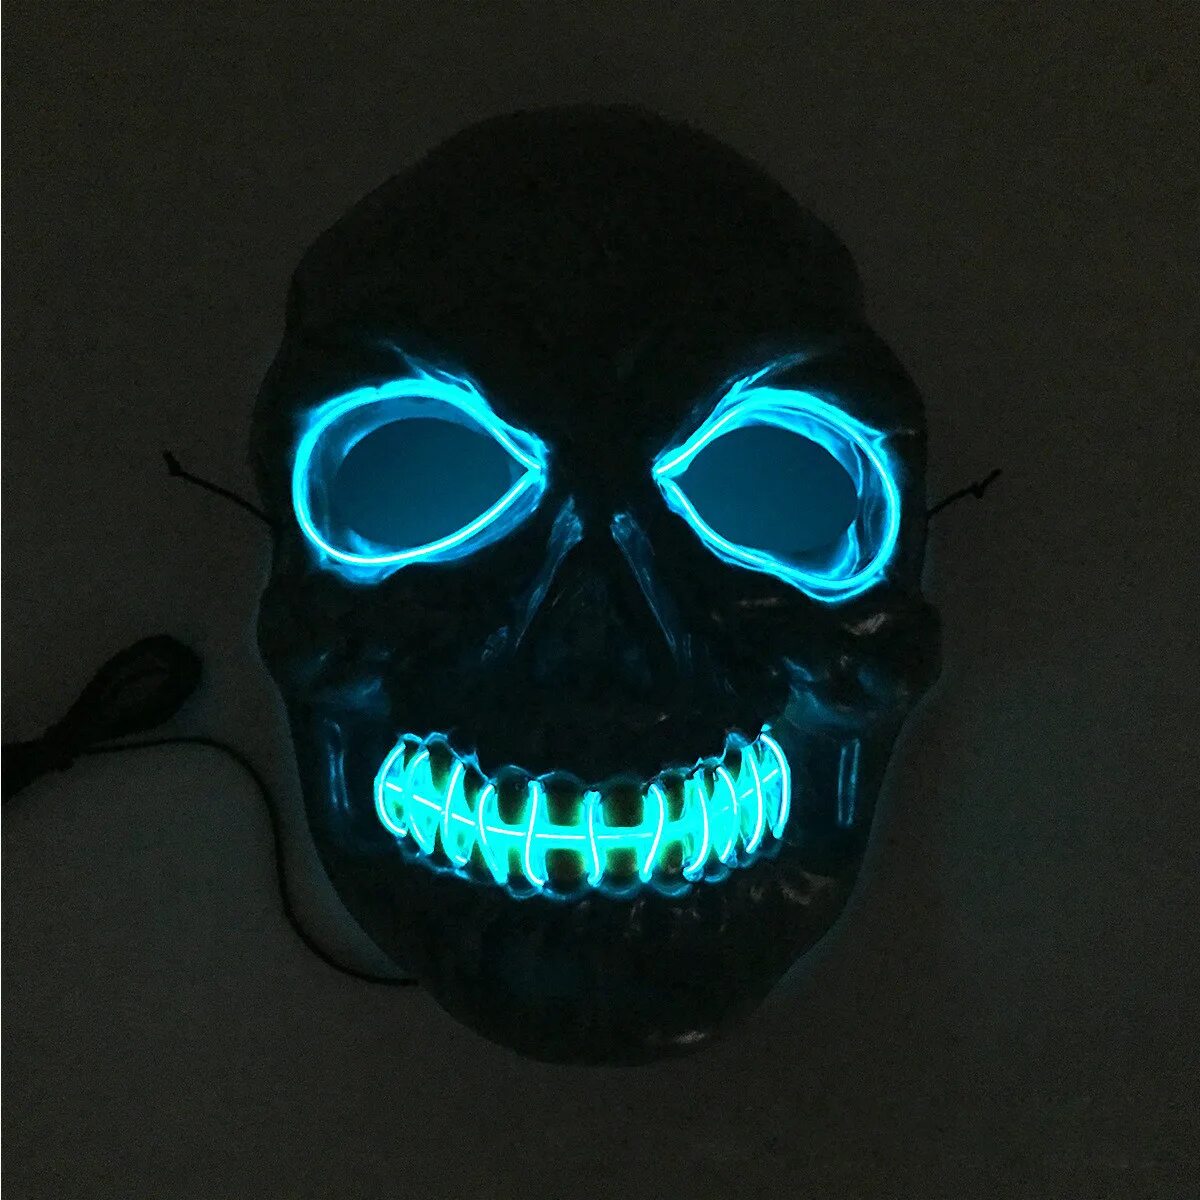 Купить светодиодную маску. Светодиодная маска. Маска на Хэллоуин светящаяся. Светодиодная маска для Хэллоуина. Маски для мальчиков светящиеся.